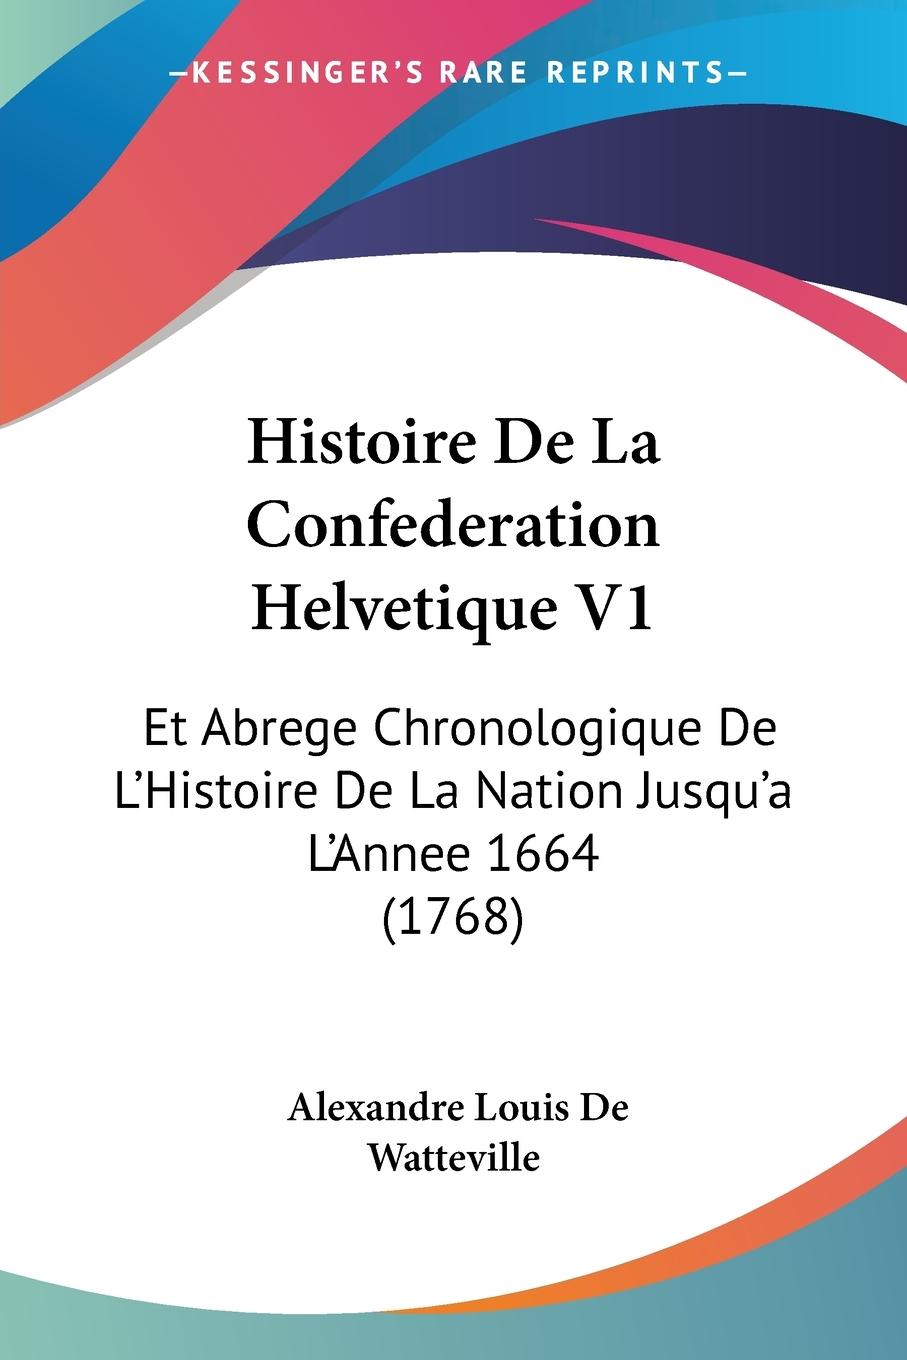 Histoire De La Confederation Helvetique V1 - De Watteville, Alexandre Louis